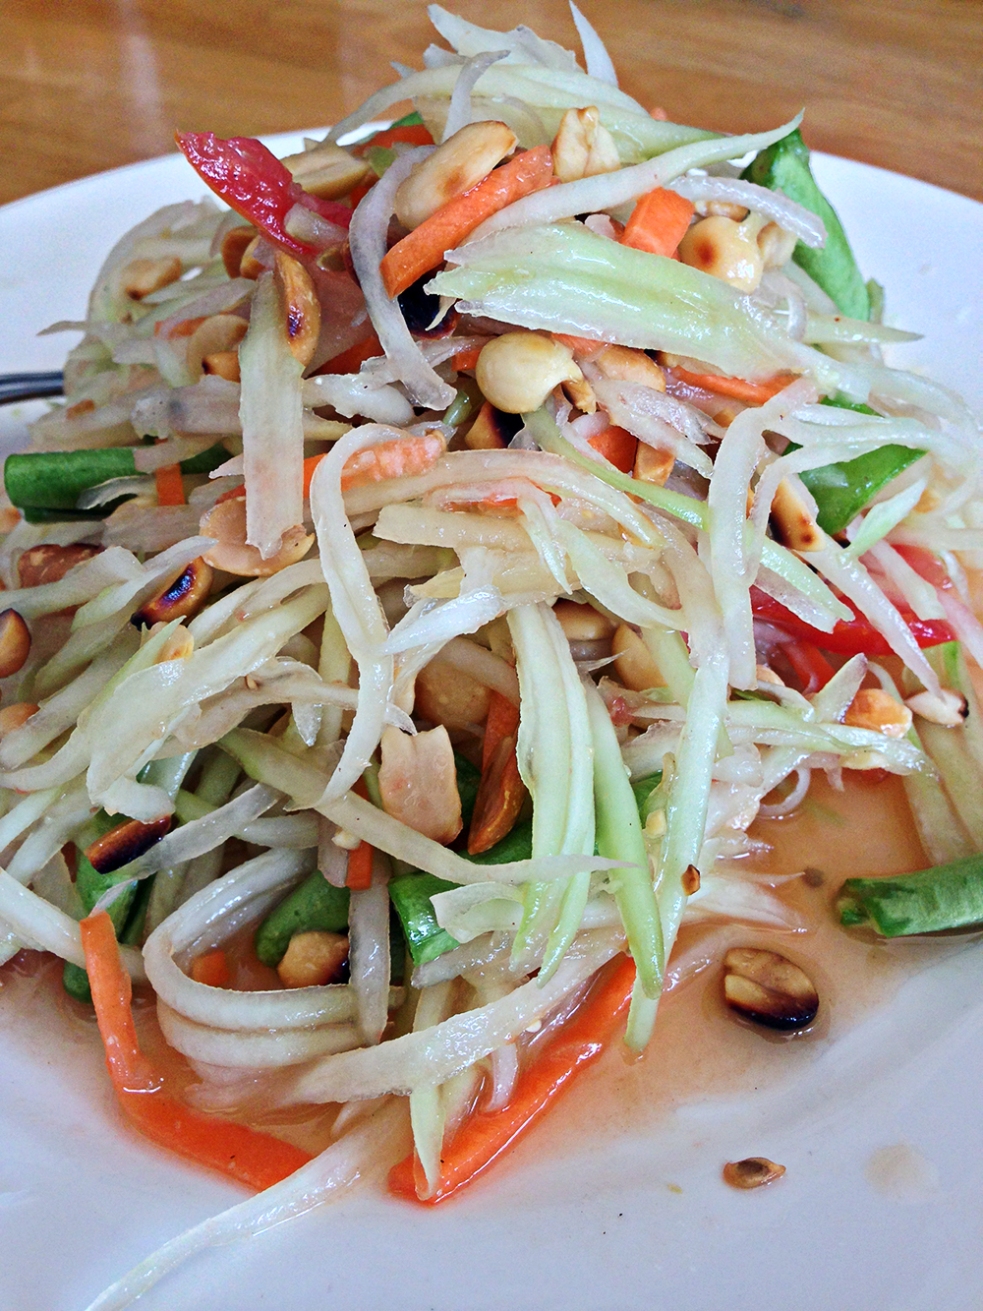 Thai papaya salad